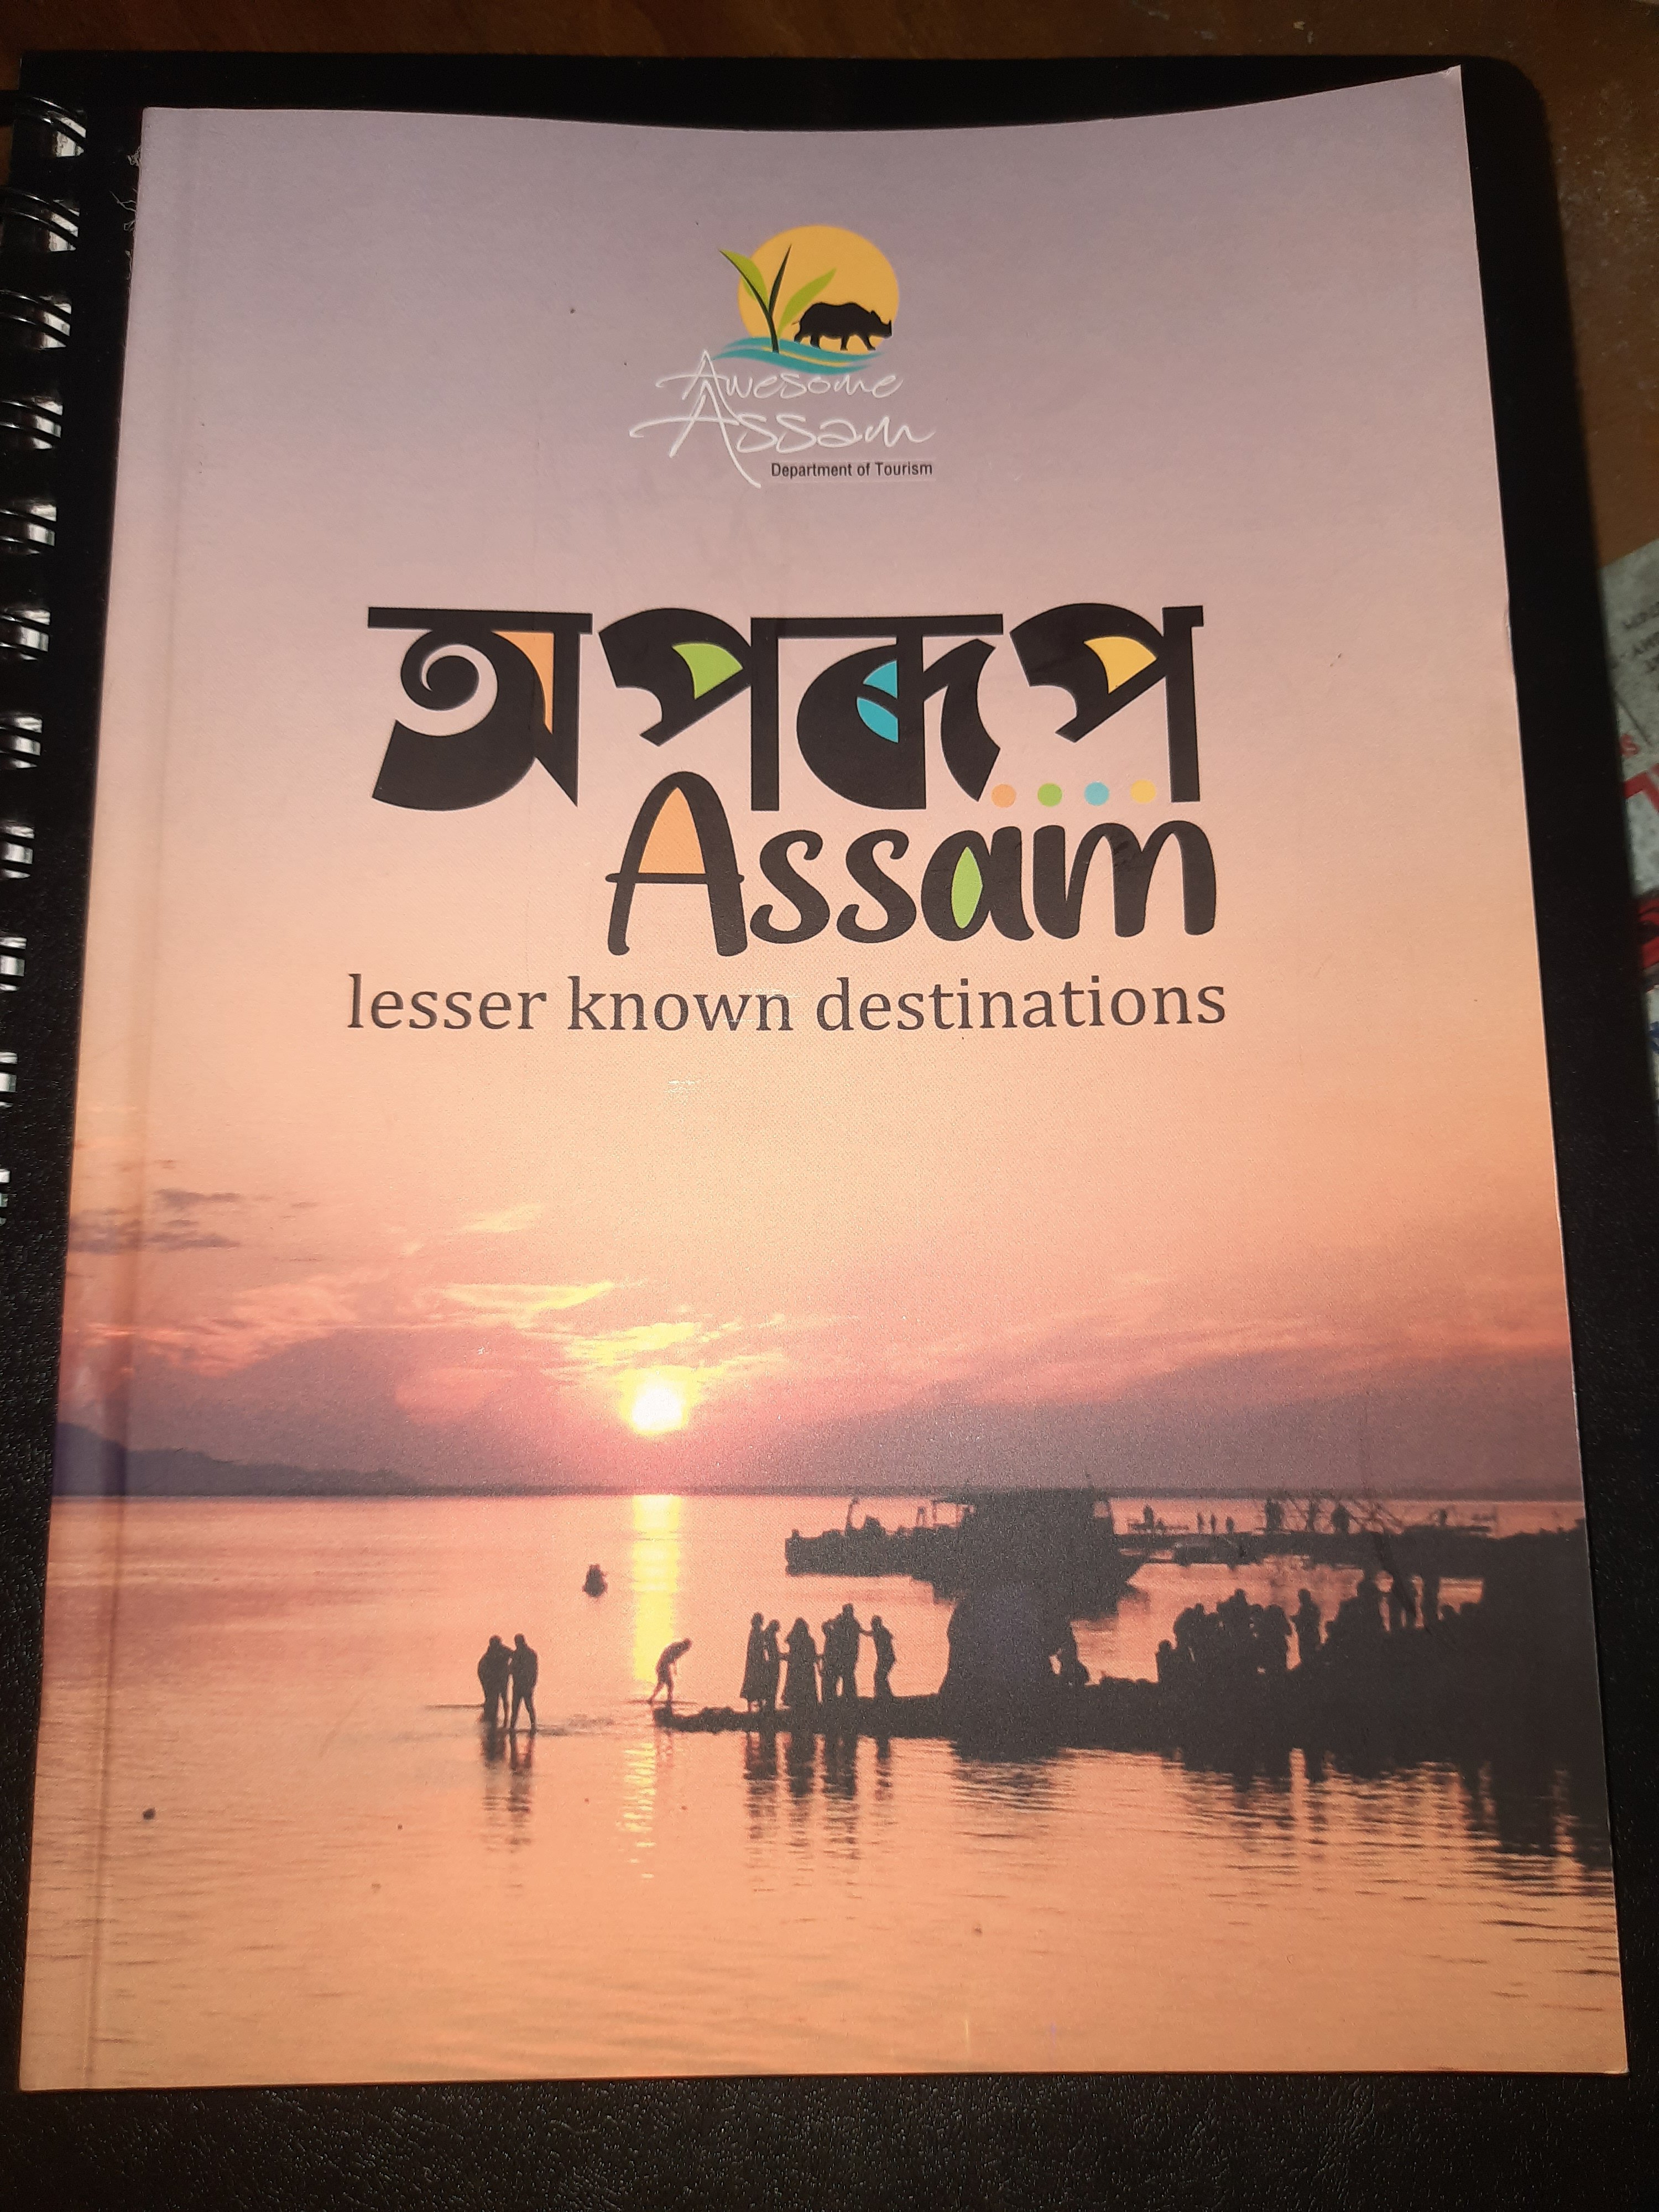 Aparup Assam